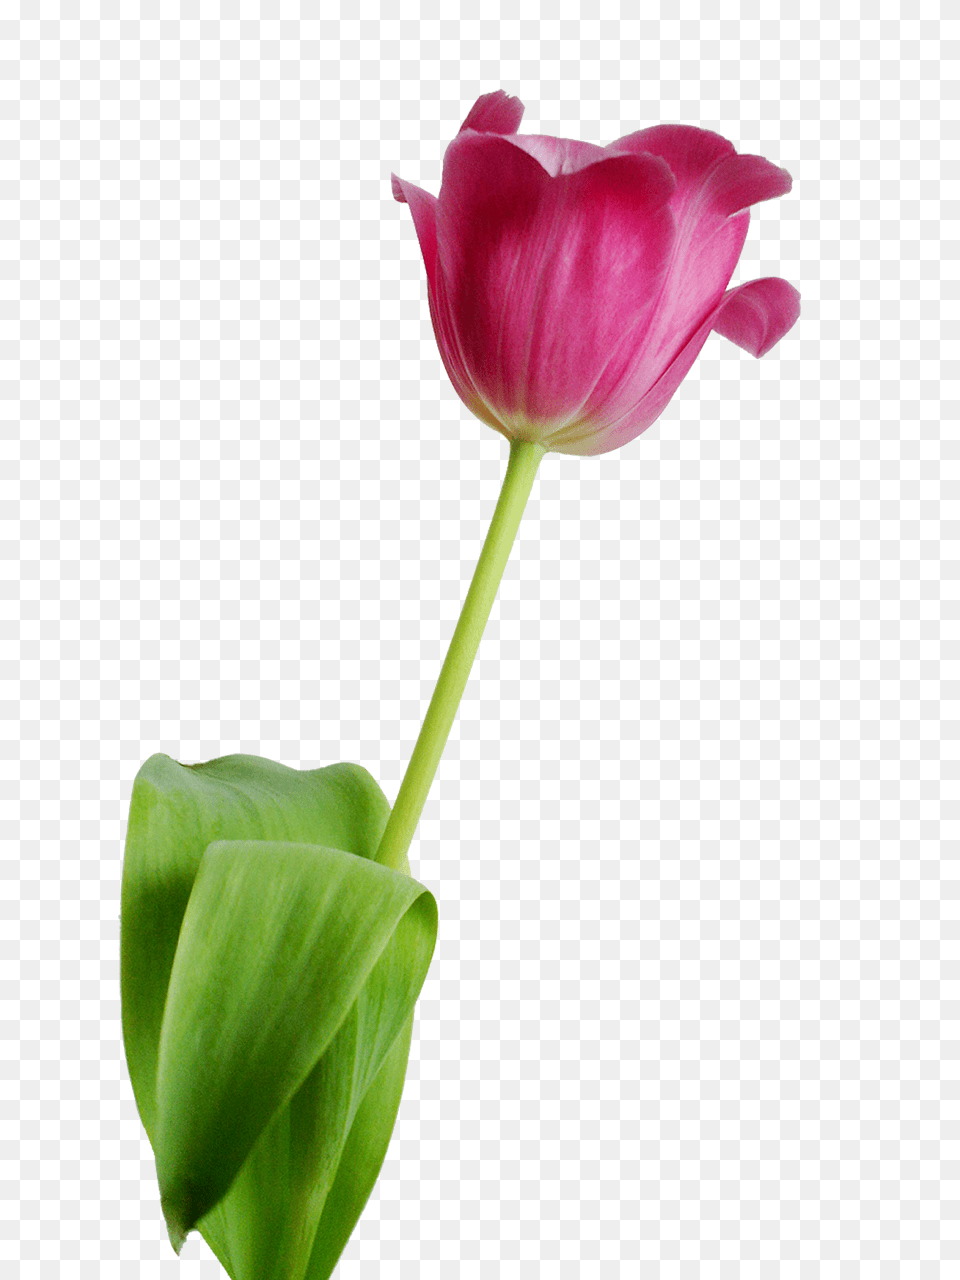 Tulip Flower, Petal, Plant Free Transparent Png